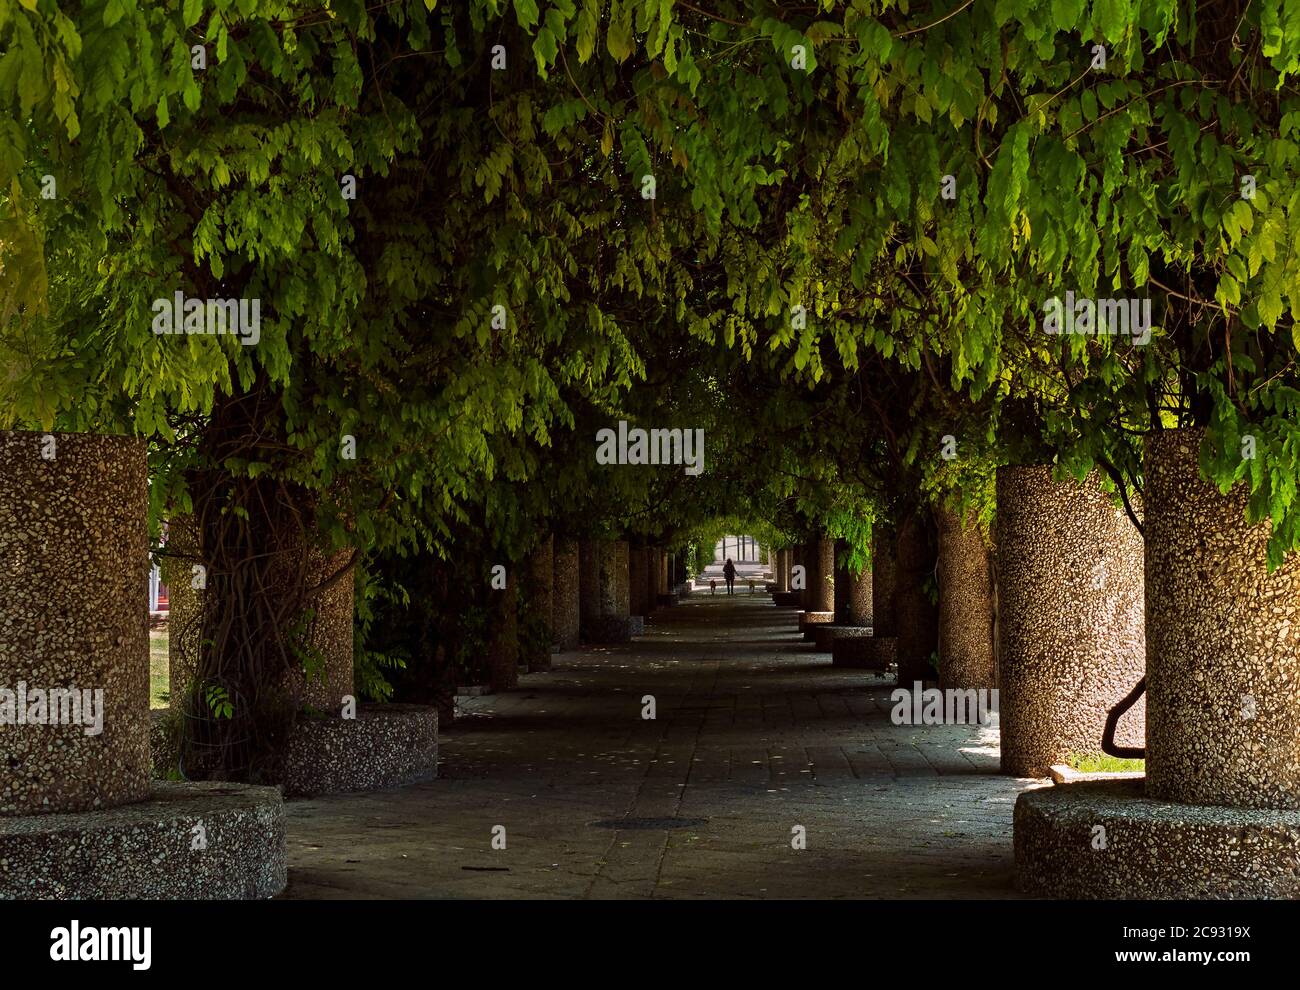 una persona cammina due cani in un tunnel oscuro ombreggiato di vigne di glicine in un parco a gerusalemme durante la quarantena pandemica nel 2020 Foto Stock